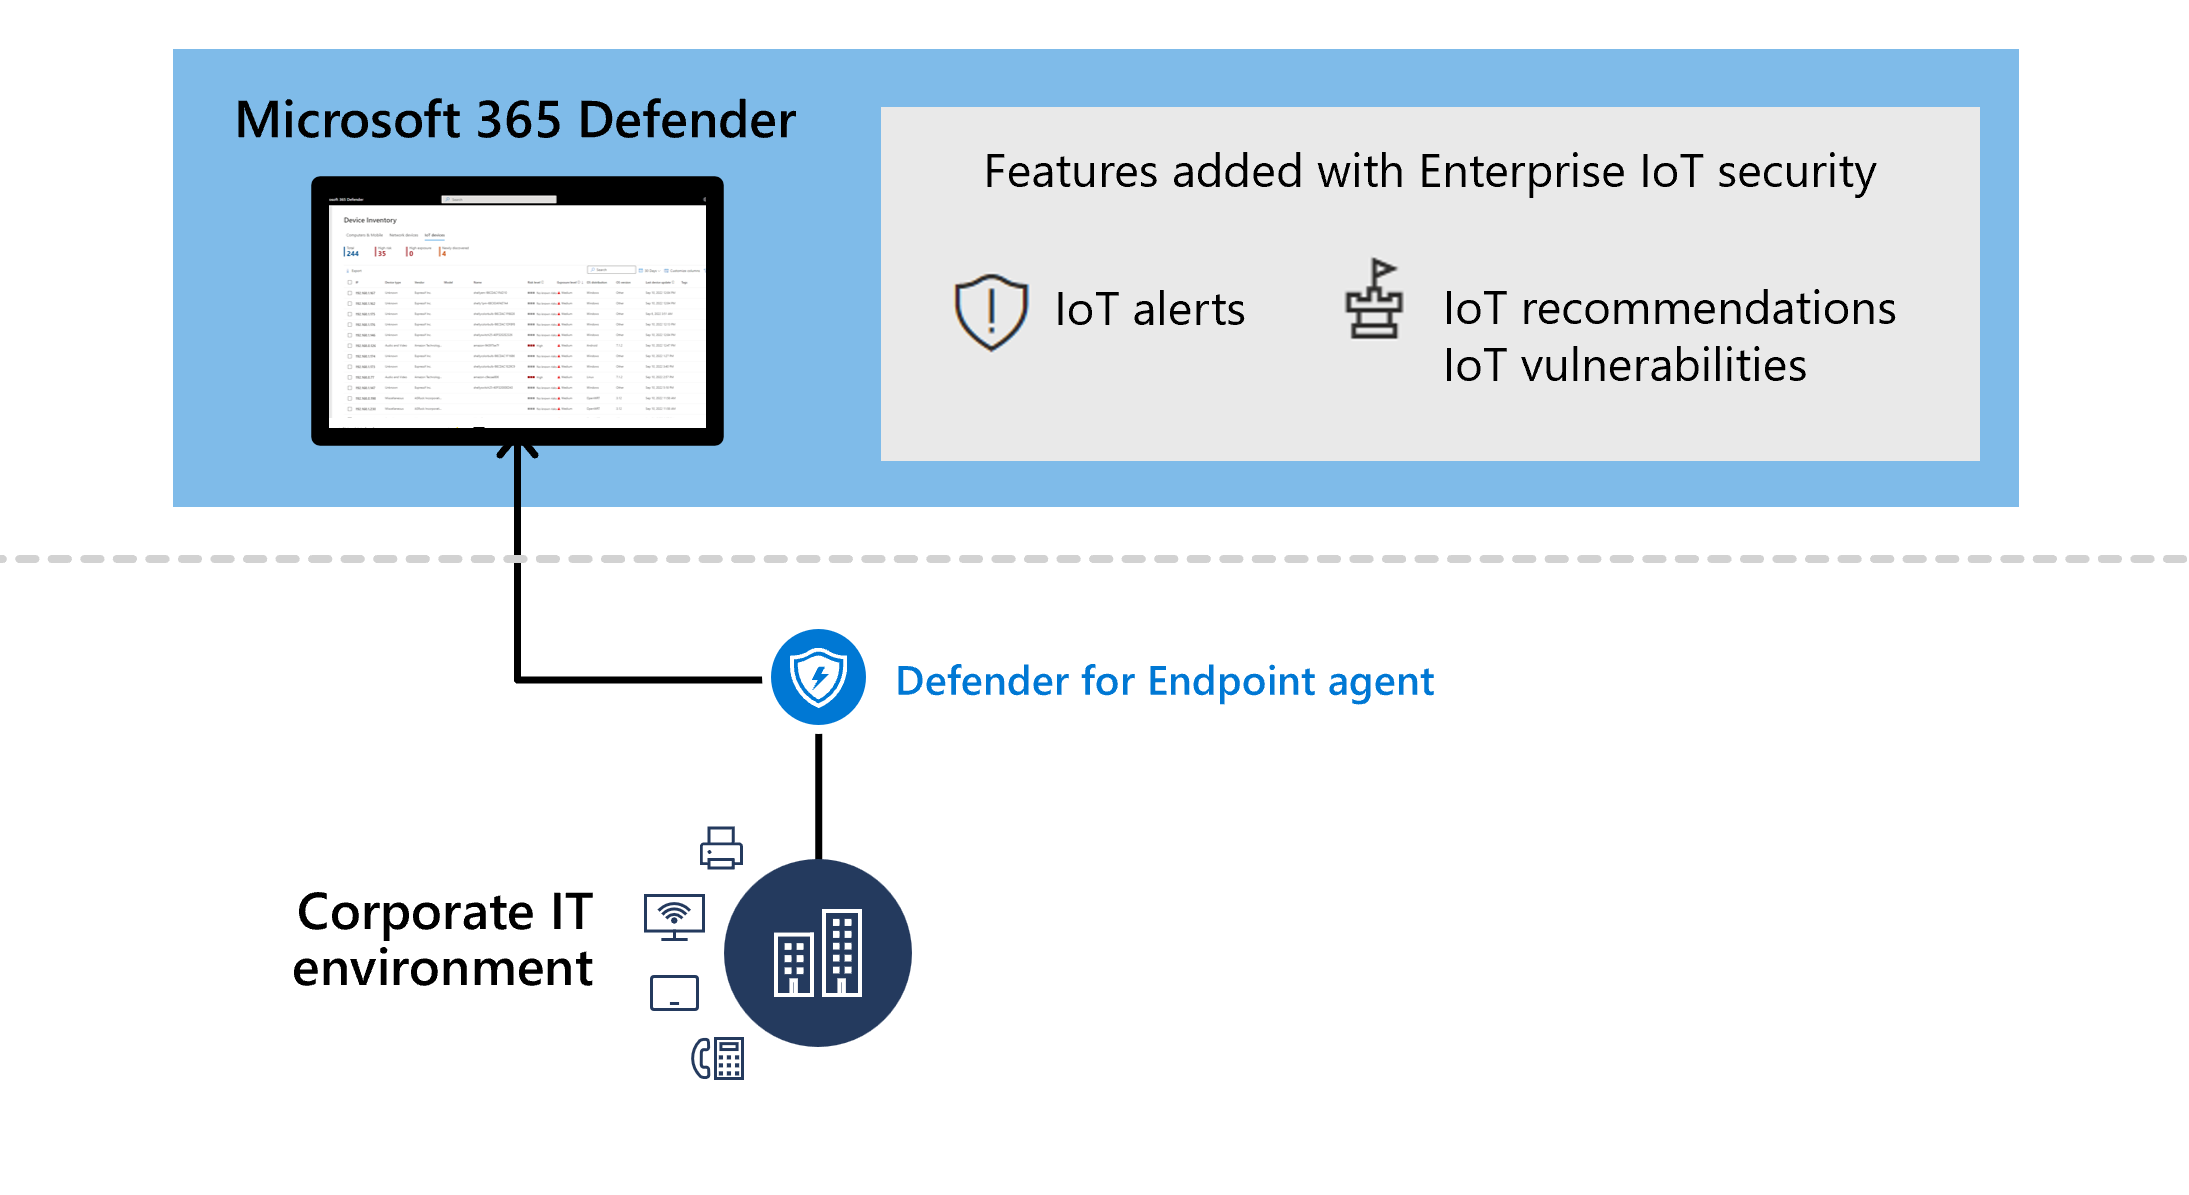 엔드포인트용 Defender에 Enterprise IoT 계획이 추가된 경우의 서비스 아키텍처 다이어그램